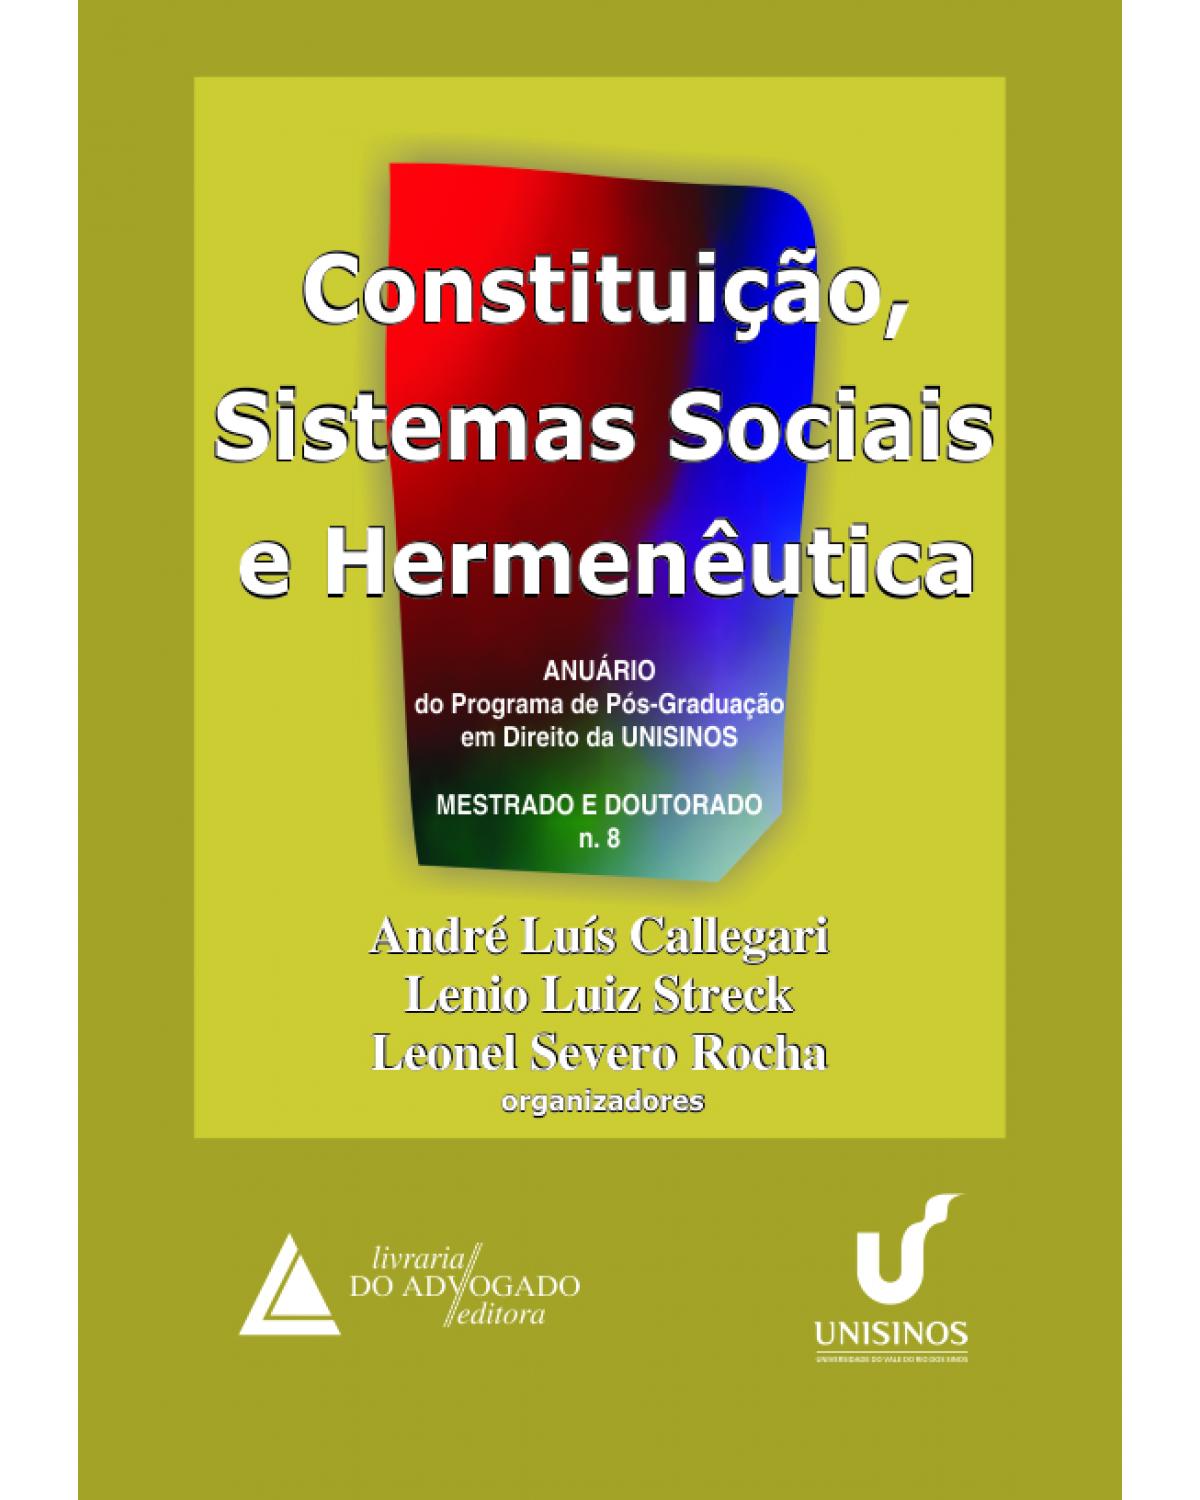 Constituição, sistemas sociais e hermenêutica - Volume 8: Anuário - Mestrado e doutorado - 1ª Edição | 2011